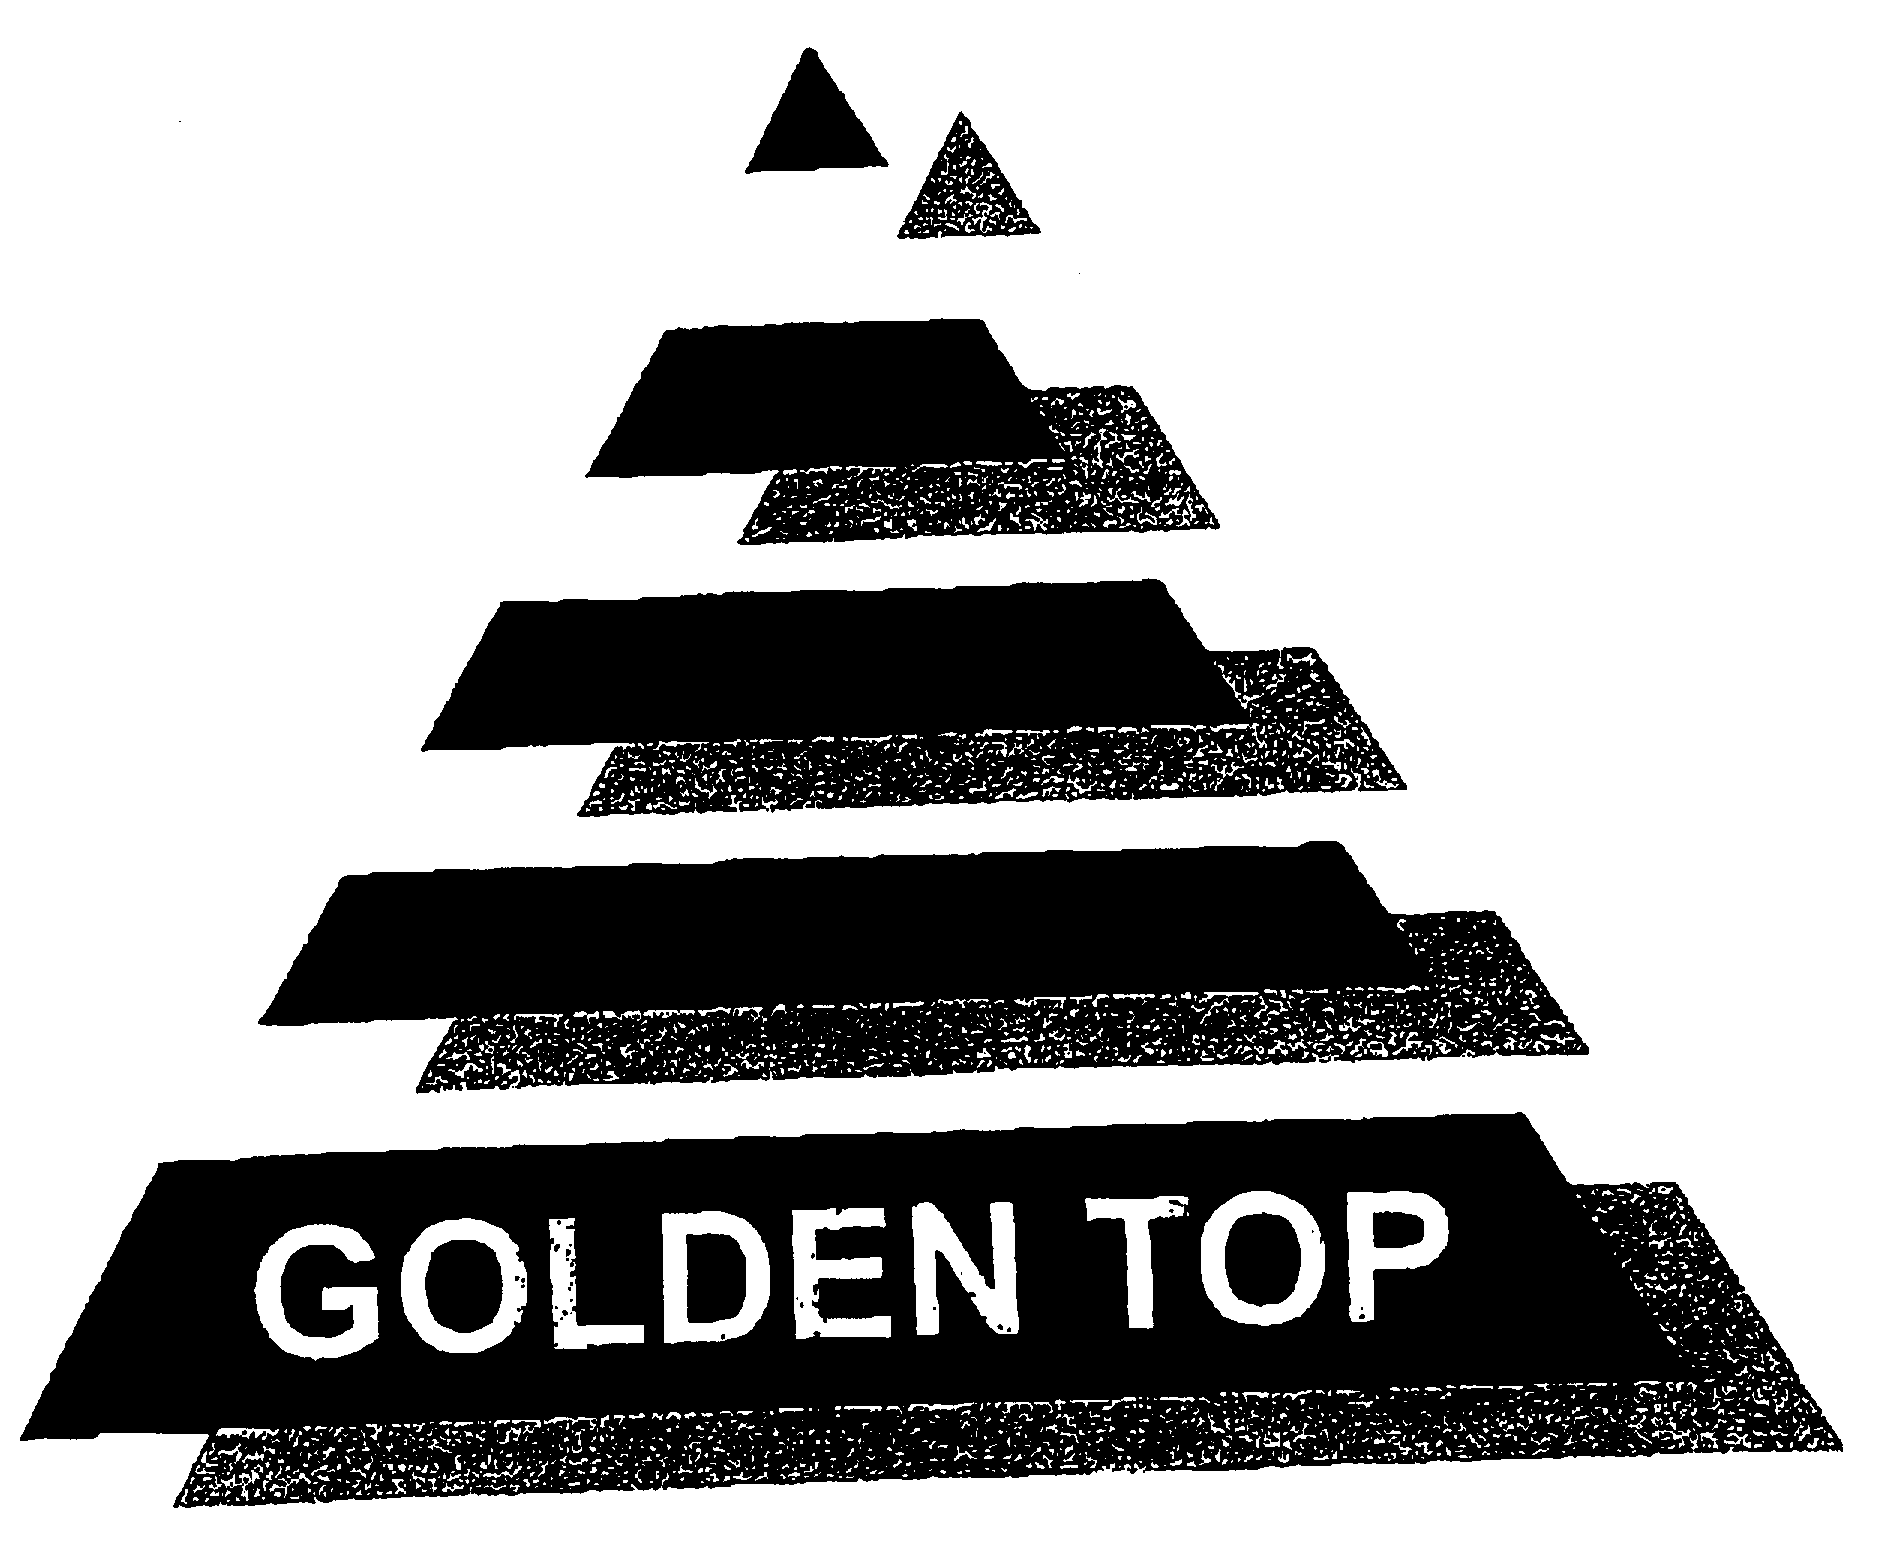  GOLDEN TOP